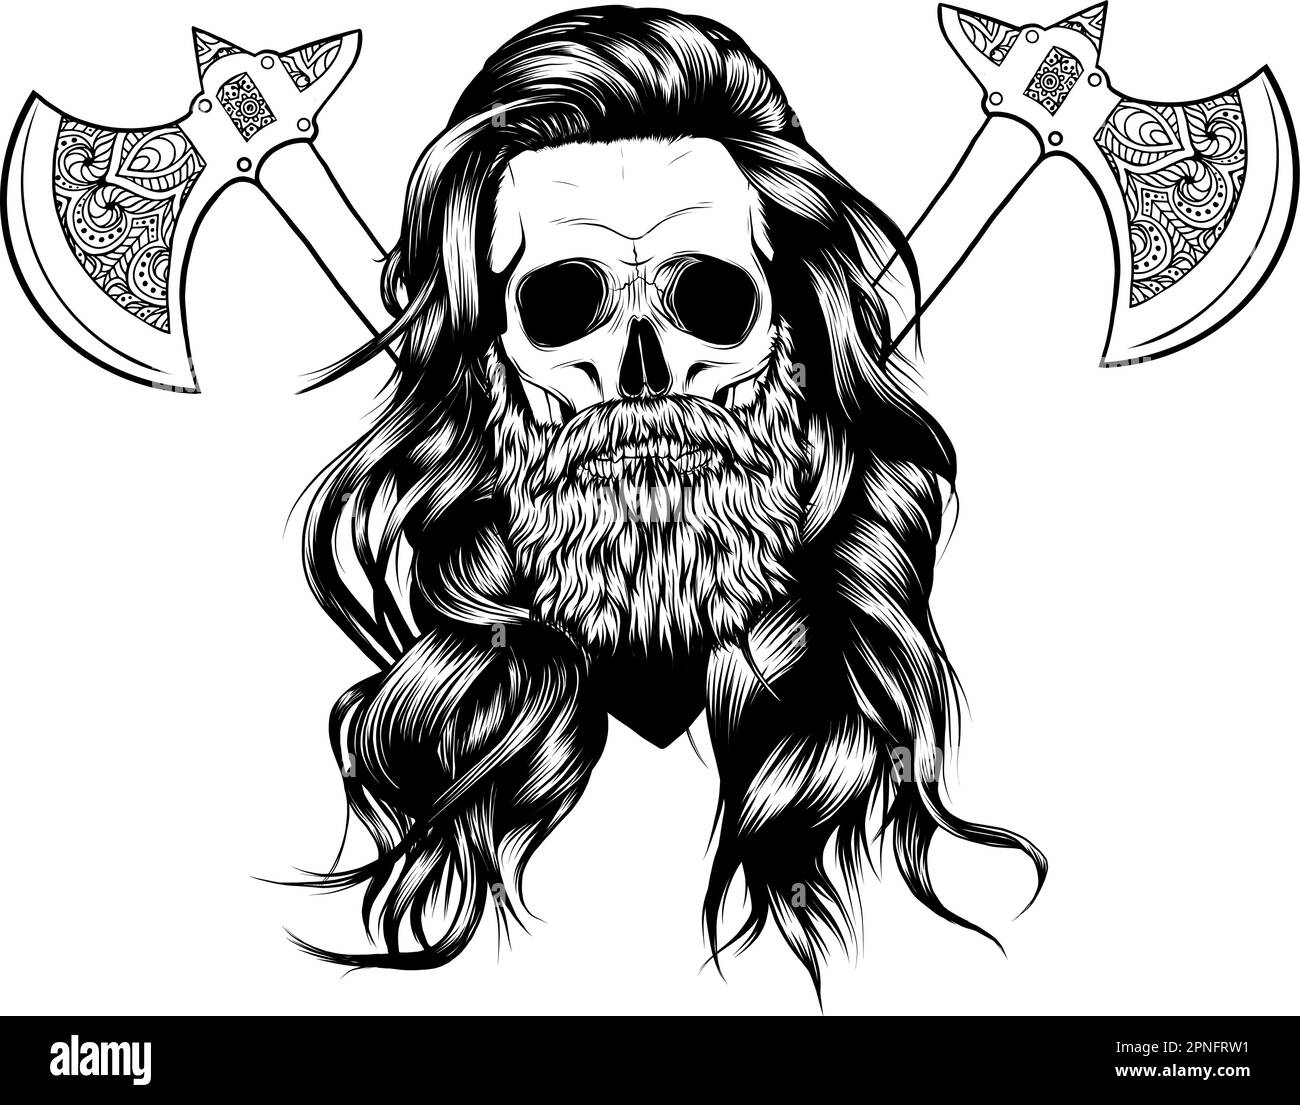 Crâne de Vikings avec arme AX vecteur grunge illustration isolée sur fond blanc Illustration de Vecteur